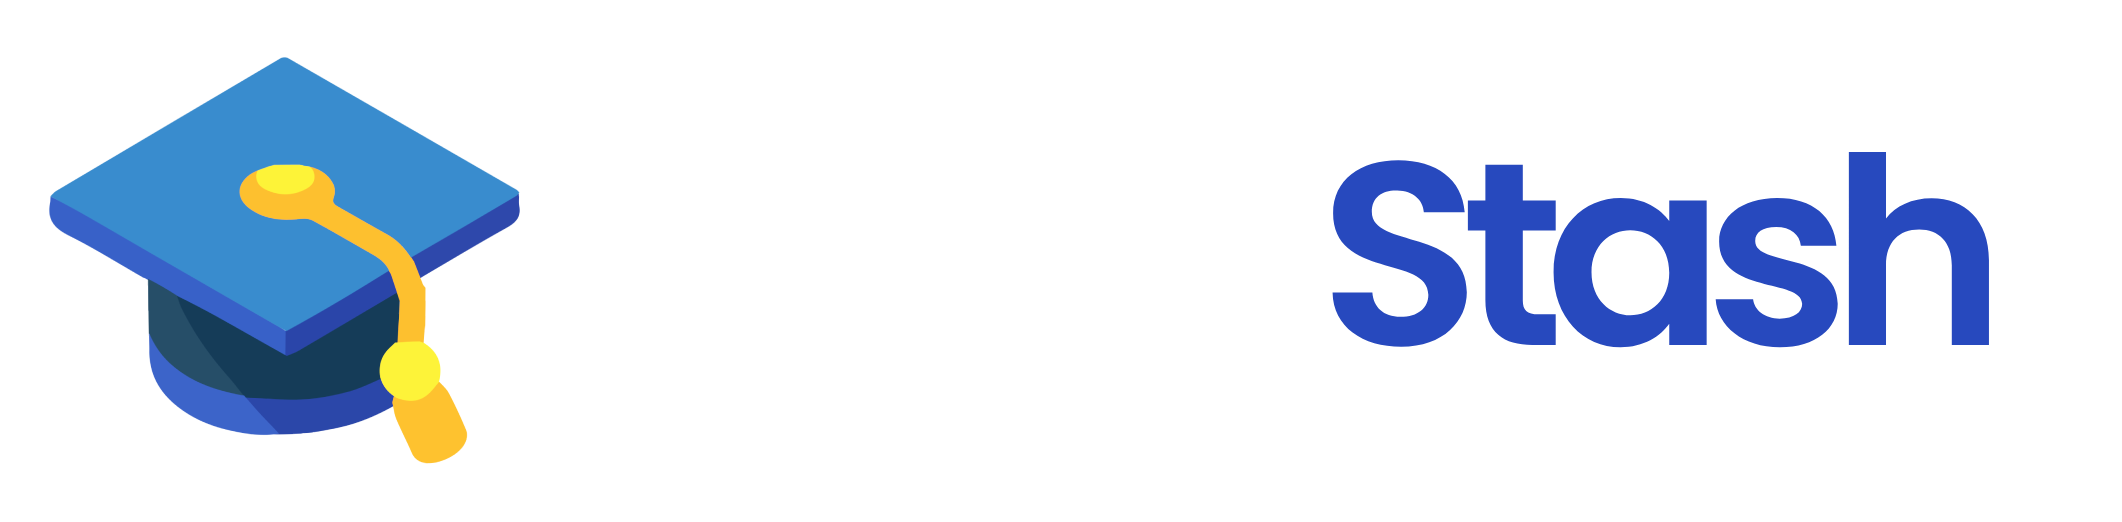 StudyStash Logo